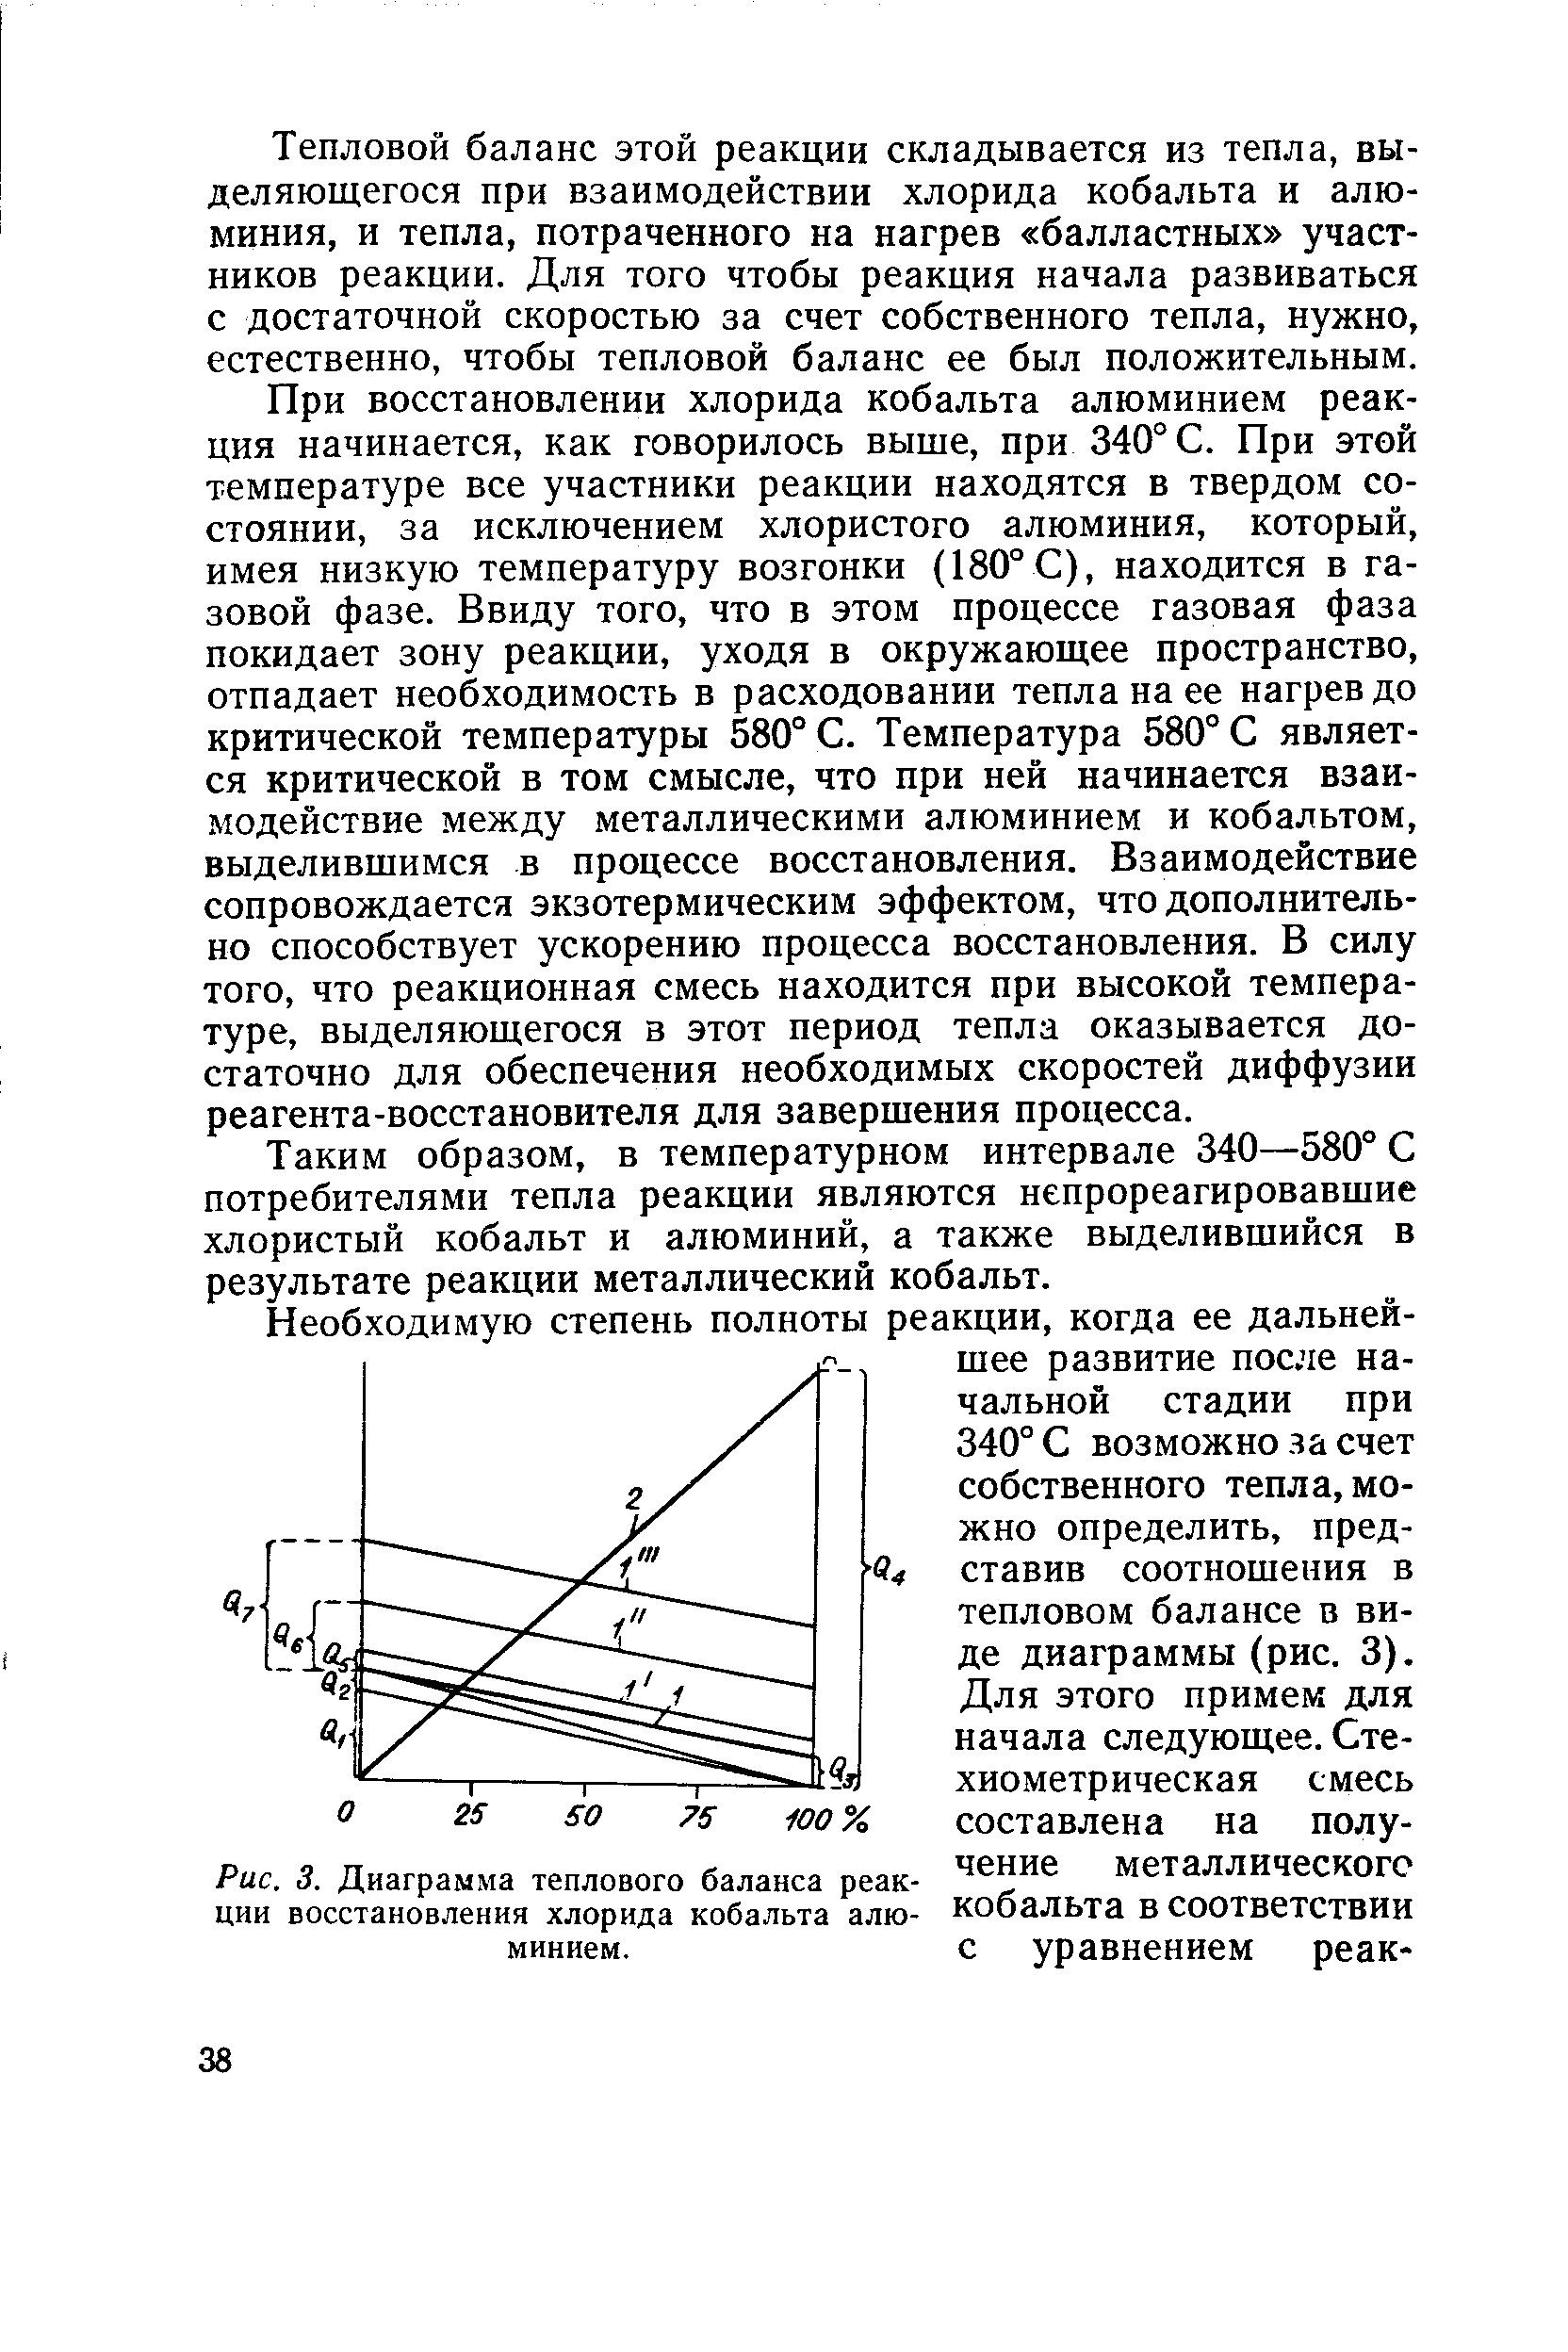 Рис. 3. Диаграмма теплового баланса реакции восстановления хлорида кобальта алюминием.
